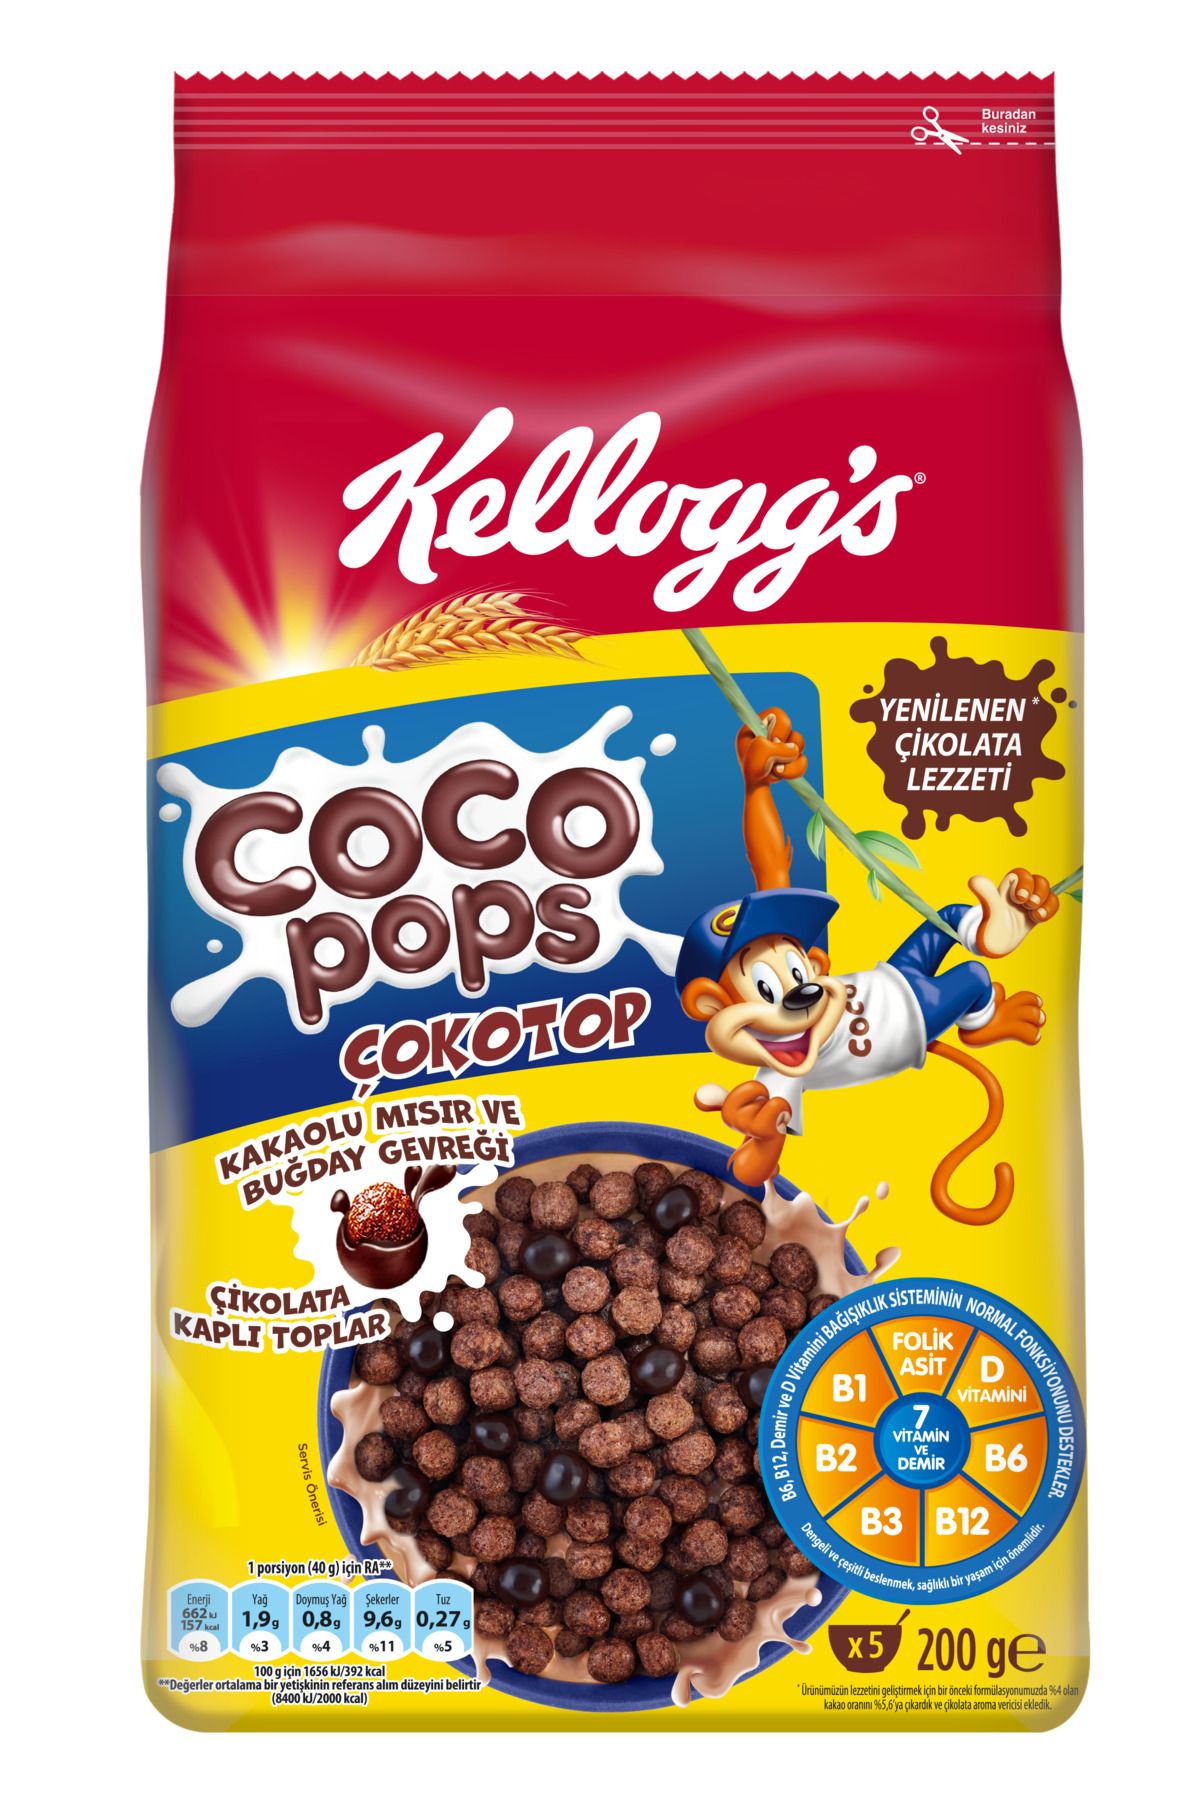 Kellogg's Coco Pops Çokotop Çikolatalı Buğday Ve Mısır Gevreği 200 Gr, Lif,demir Ve 6 Vitamin Içerir